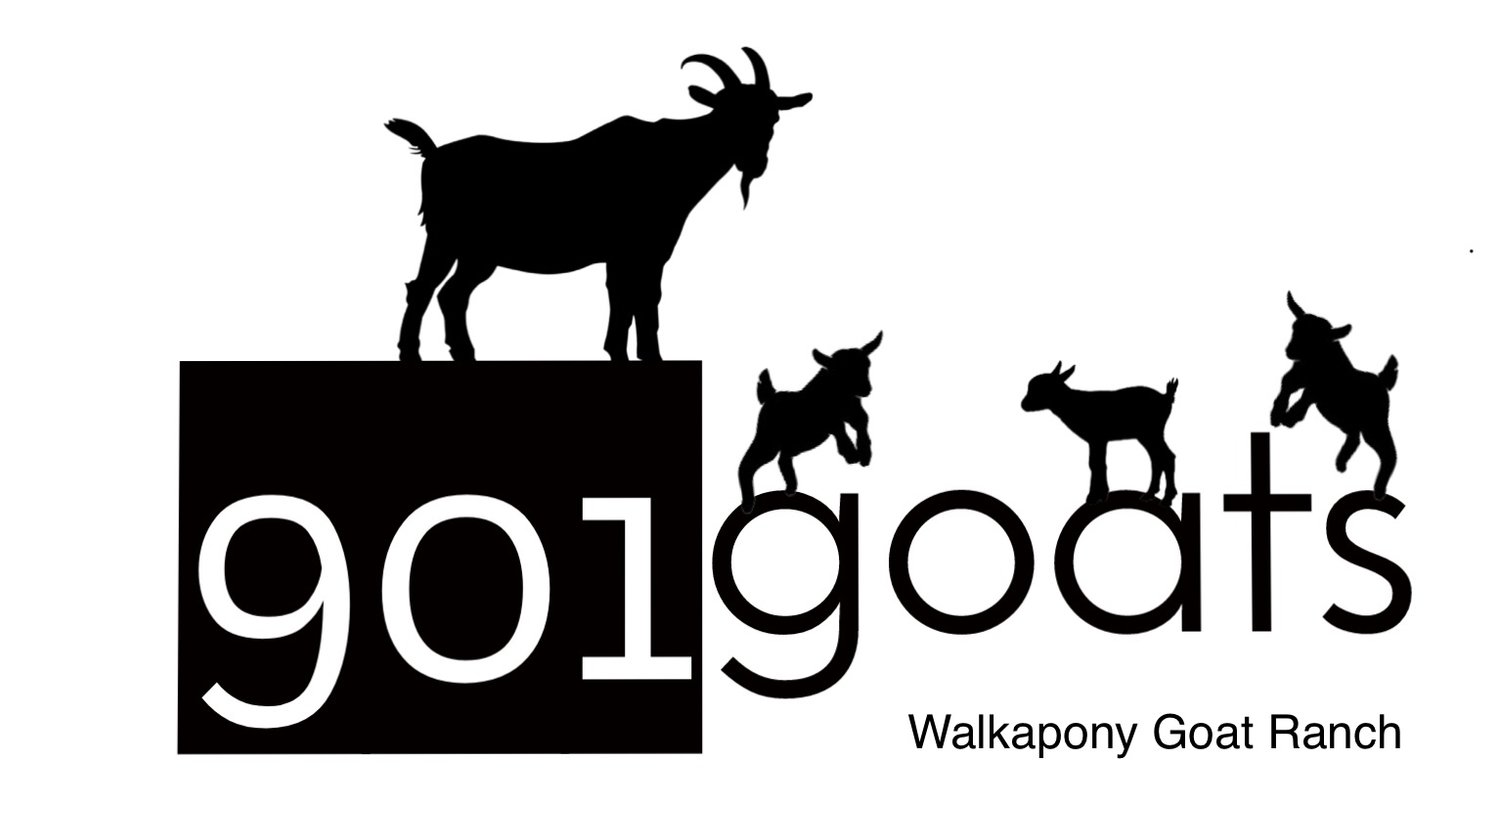 901Goats from Walkapony Goat Ranch